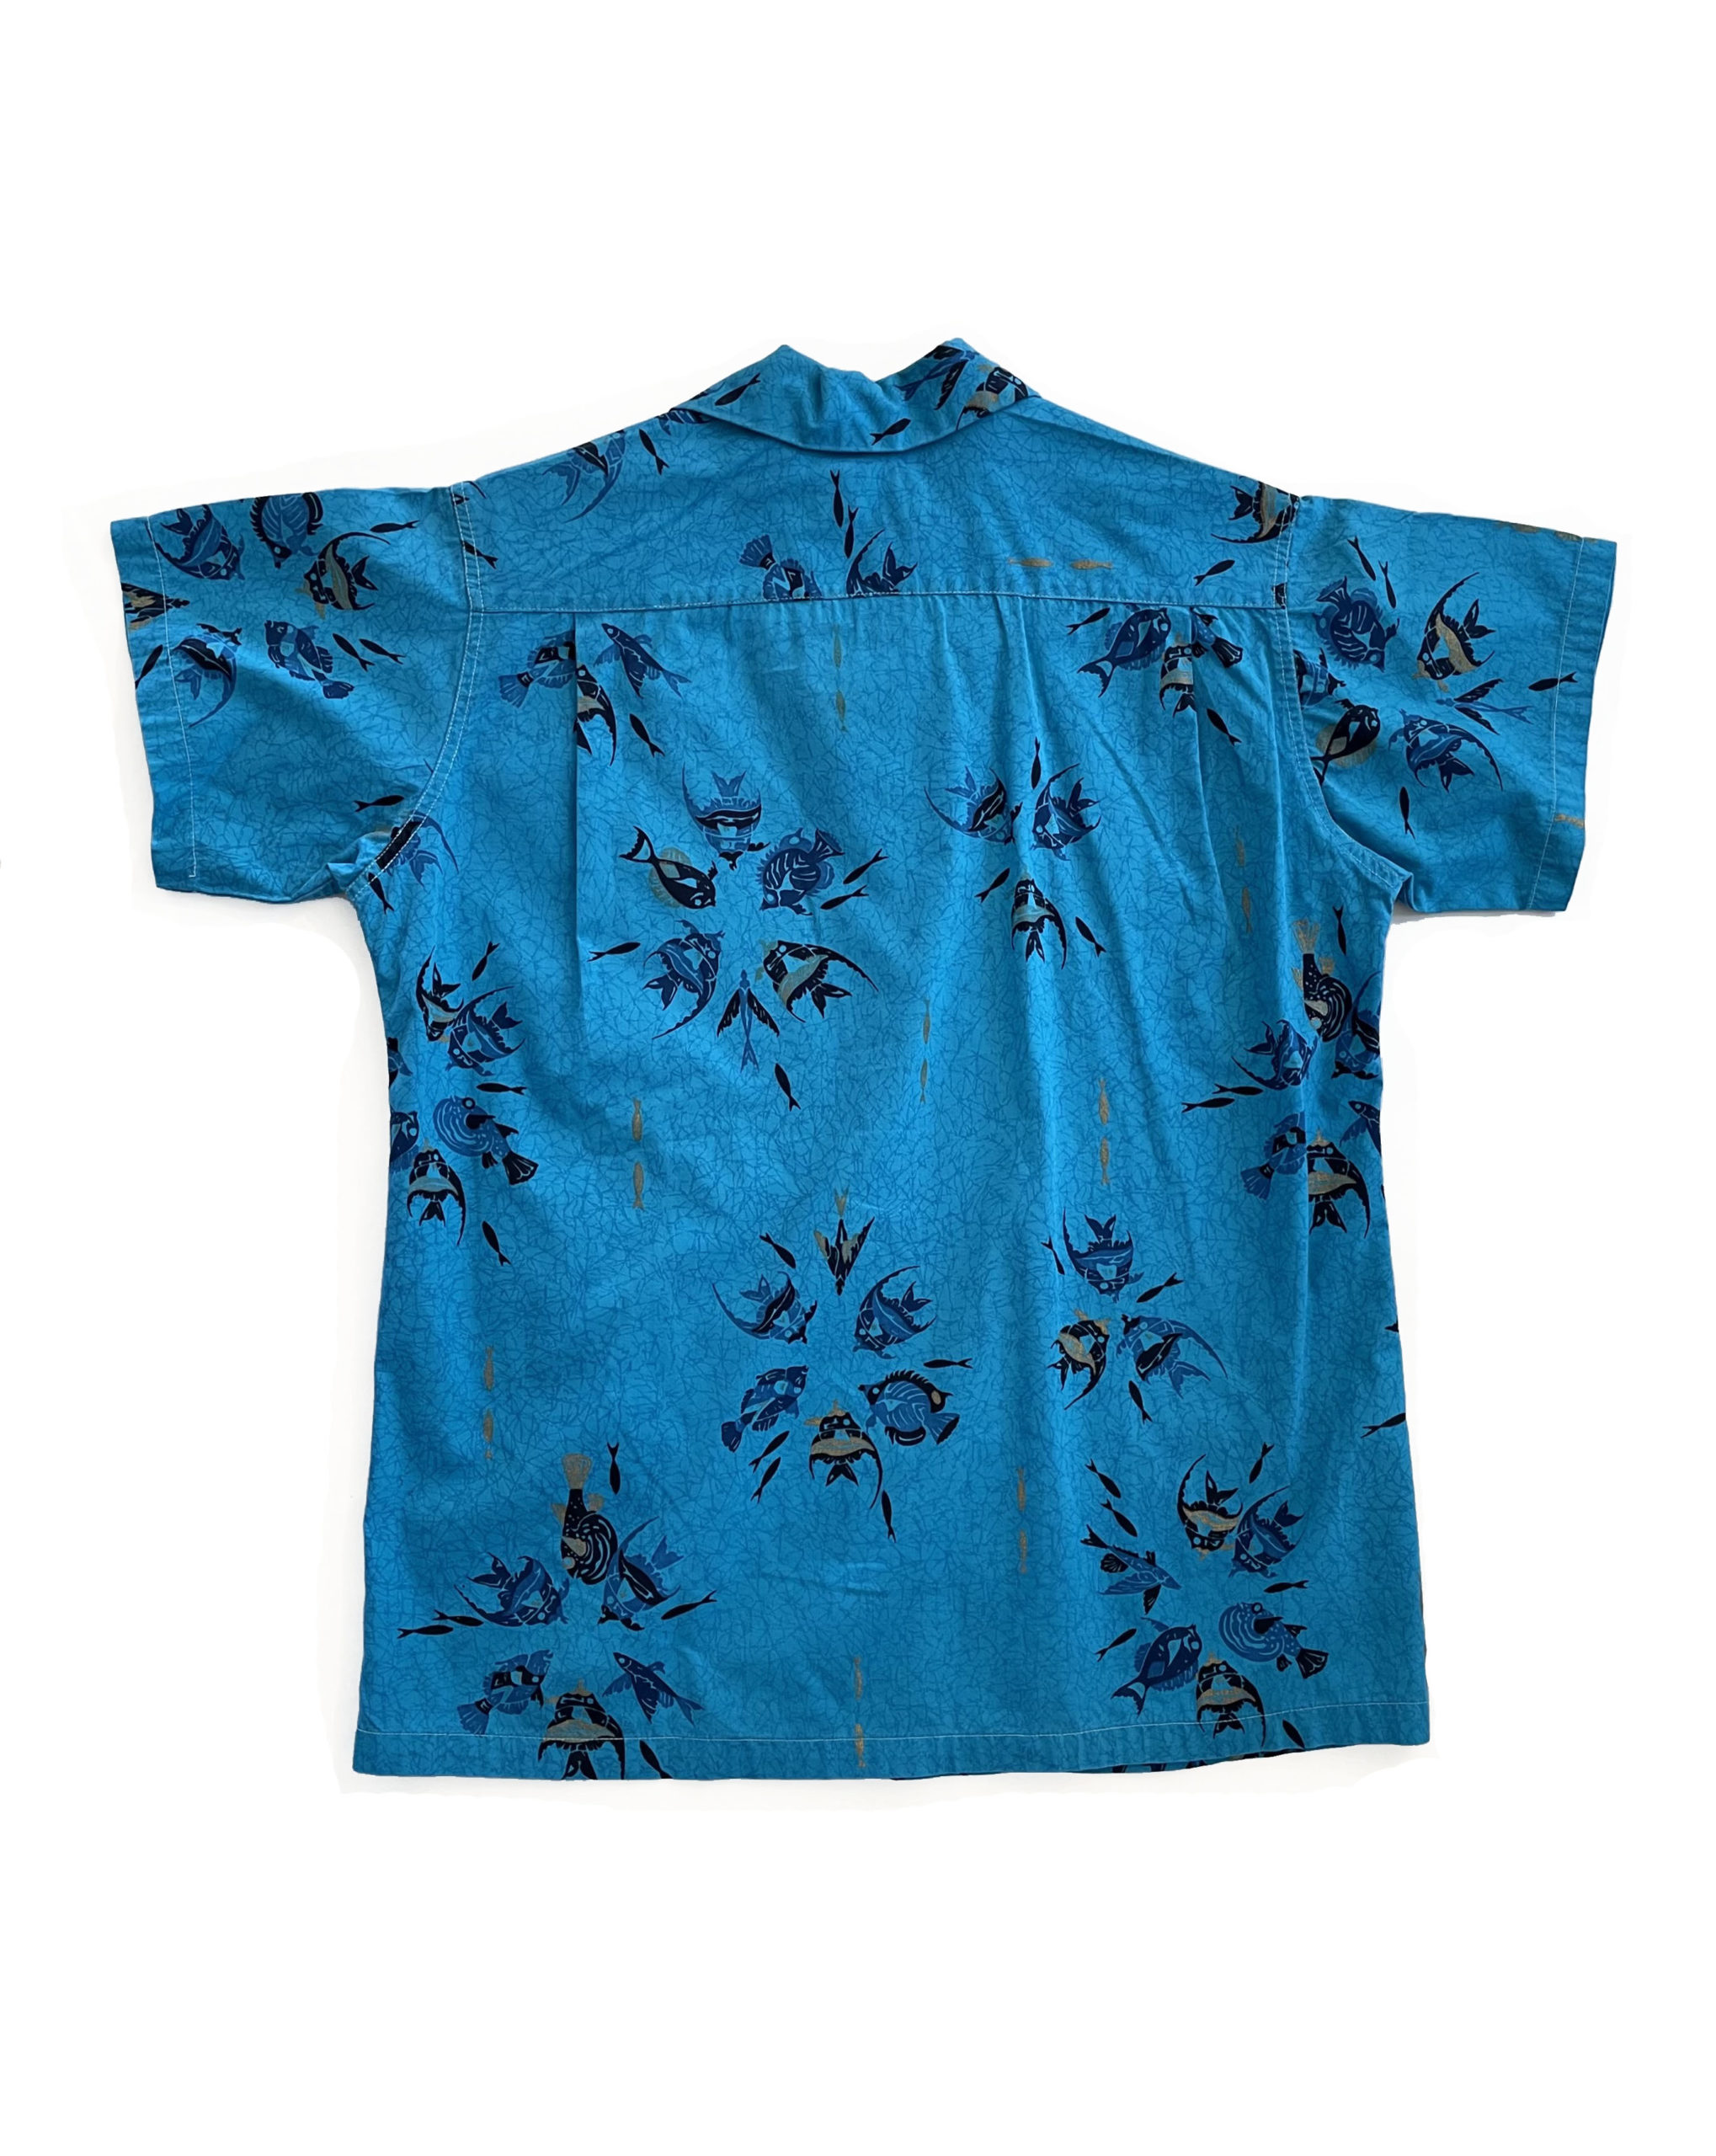 ビンテージ アロハシャツ 50’s 60’s コットン ブルー 水色 1950年代 1960年代